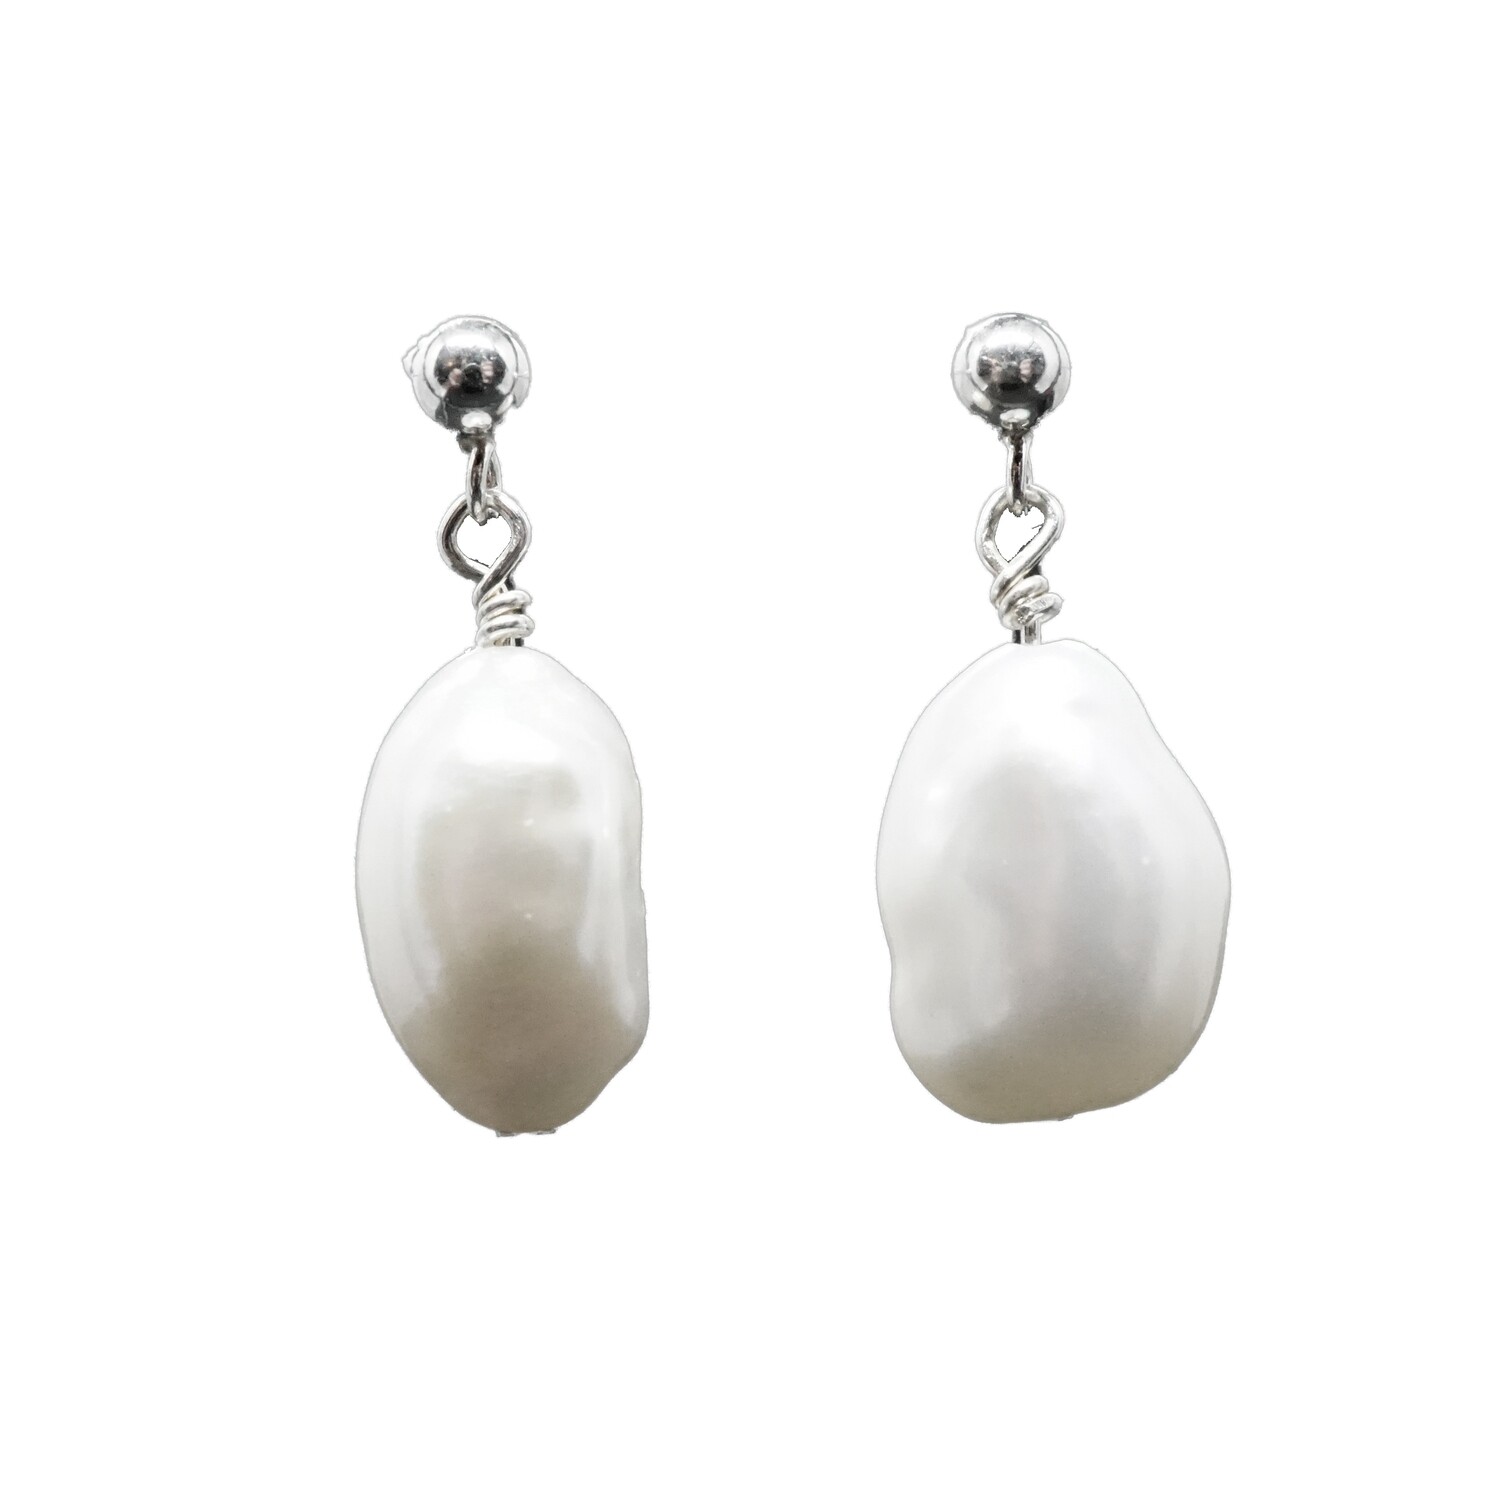 Eleanor X - Real Silver Freshwater Pearl Drop Earrings - Wedding Earrings